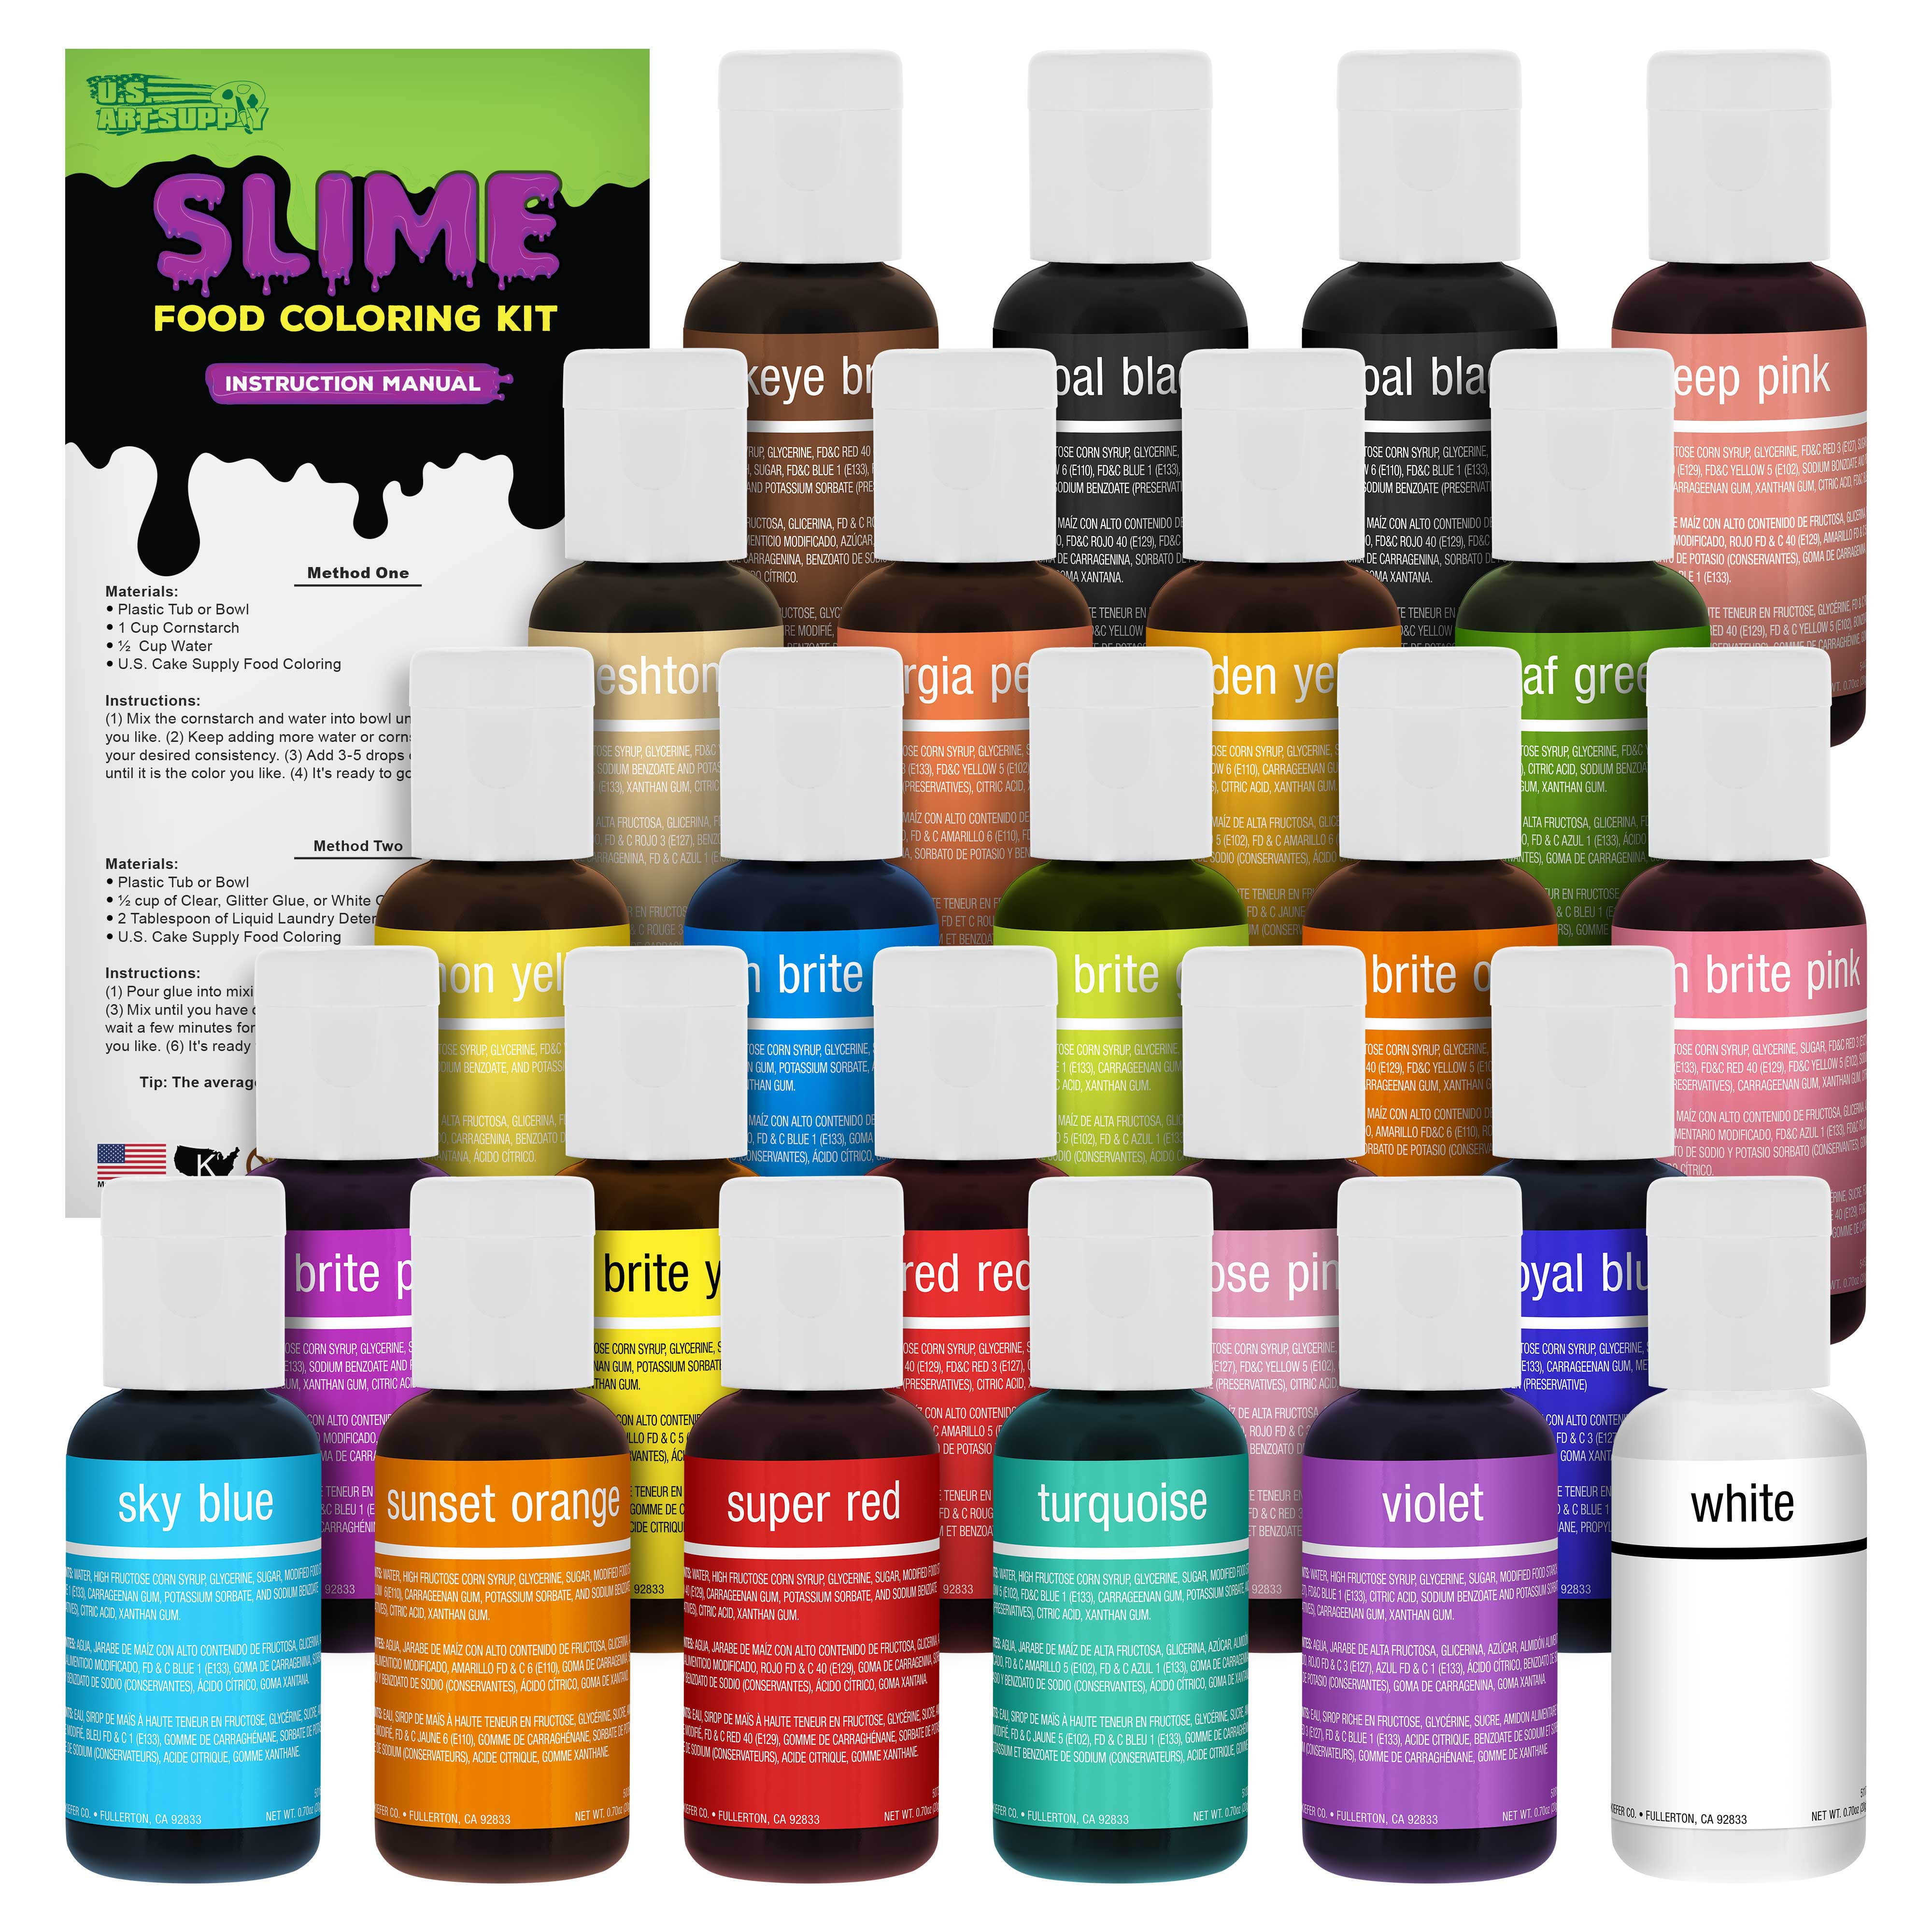 LIQUA-GEL® Complete 36 Color Kit 20ml Food Coloring Version ABC –